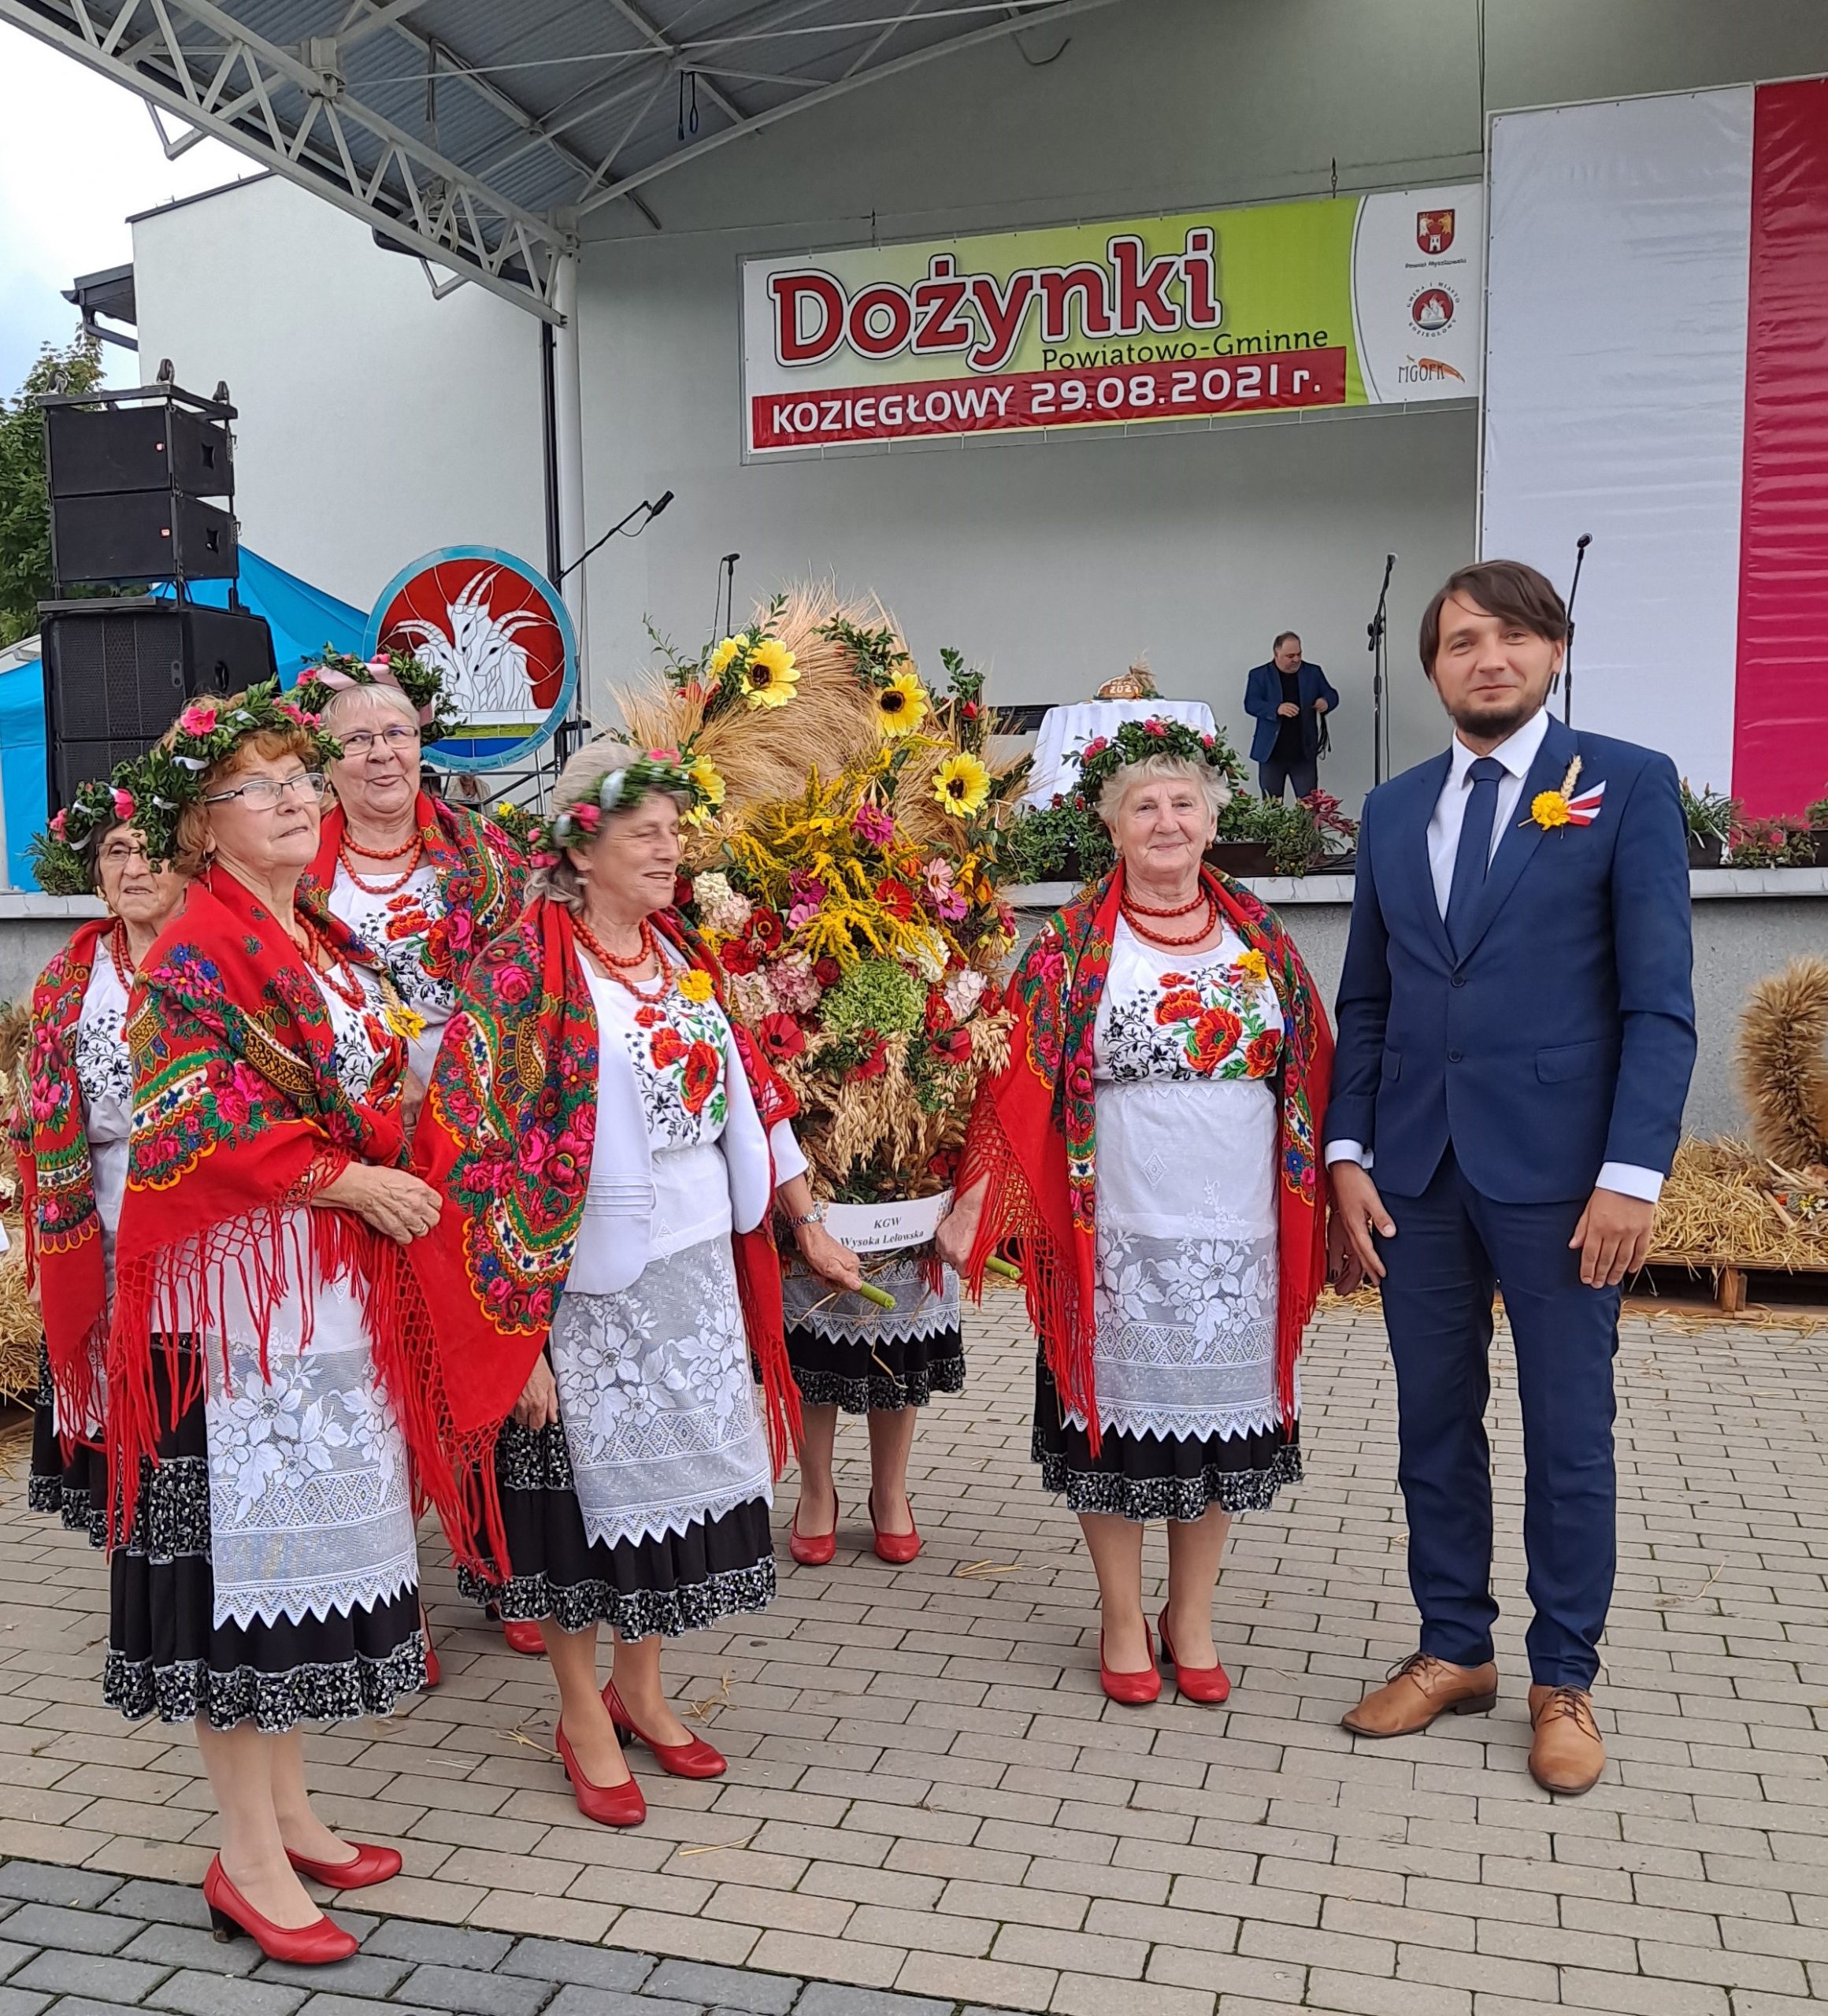 Nagrodzona rolniczka z Suliszowic podczas Powiatowych Dożynek w Koziegłowach 3